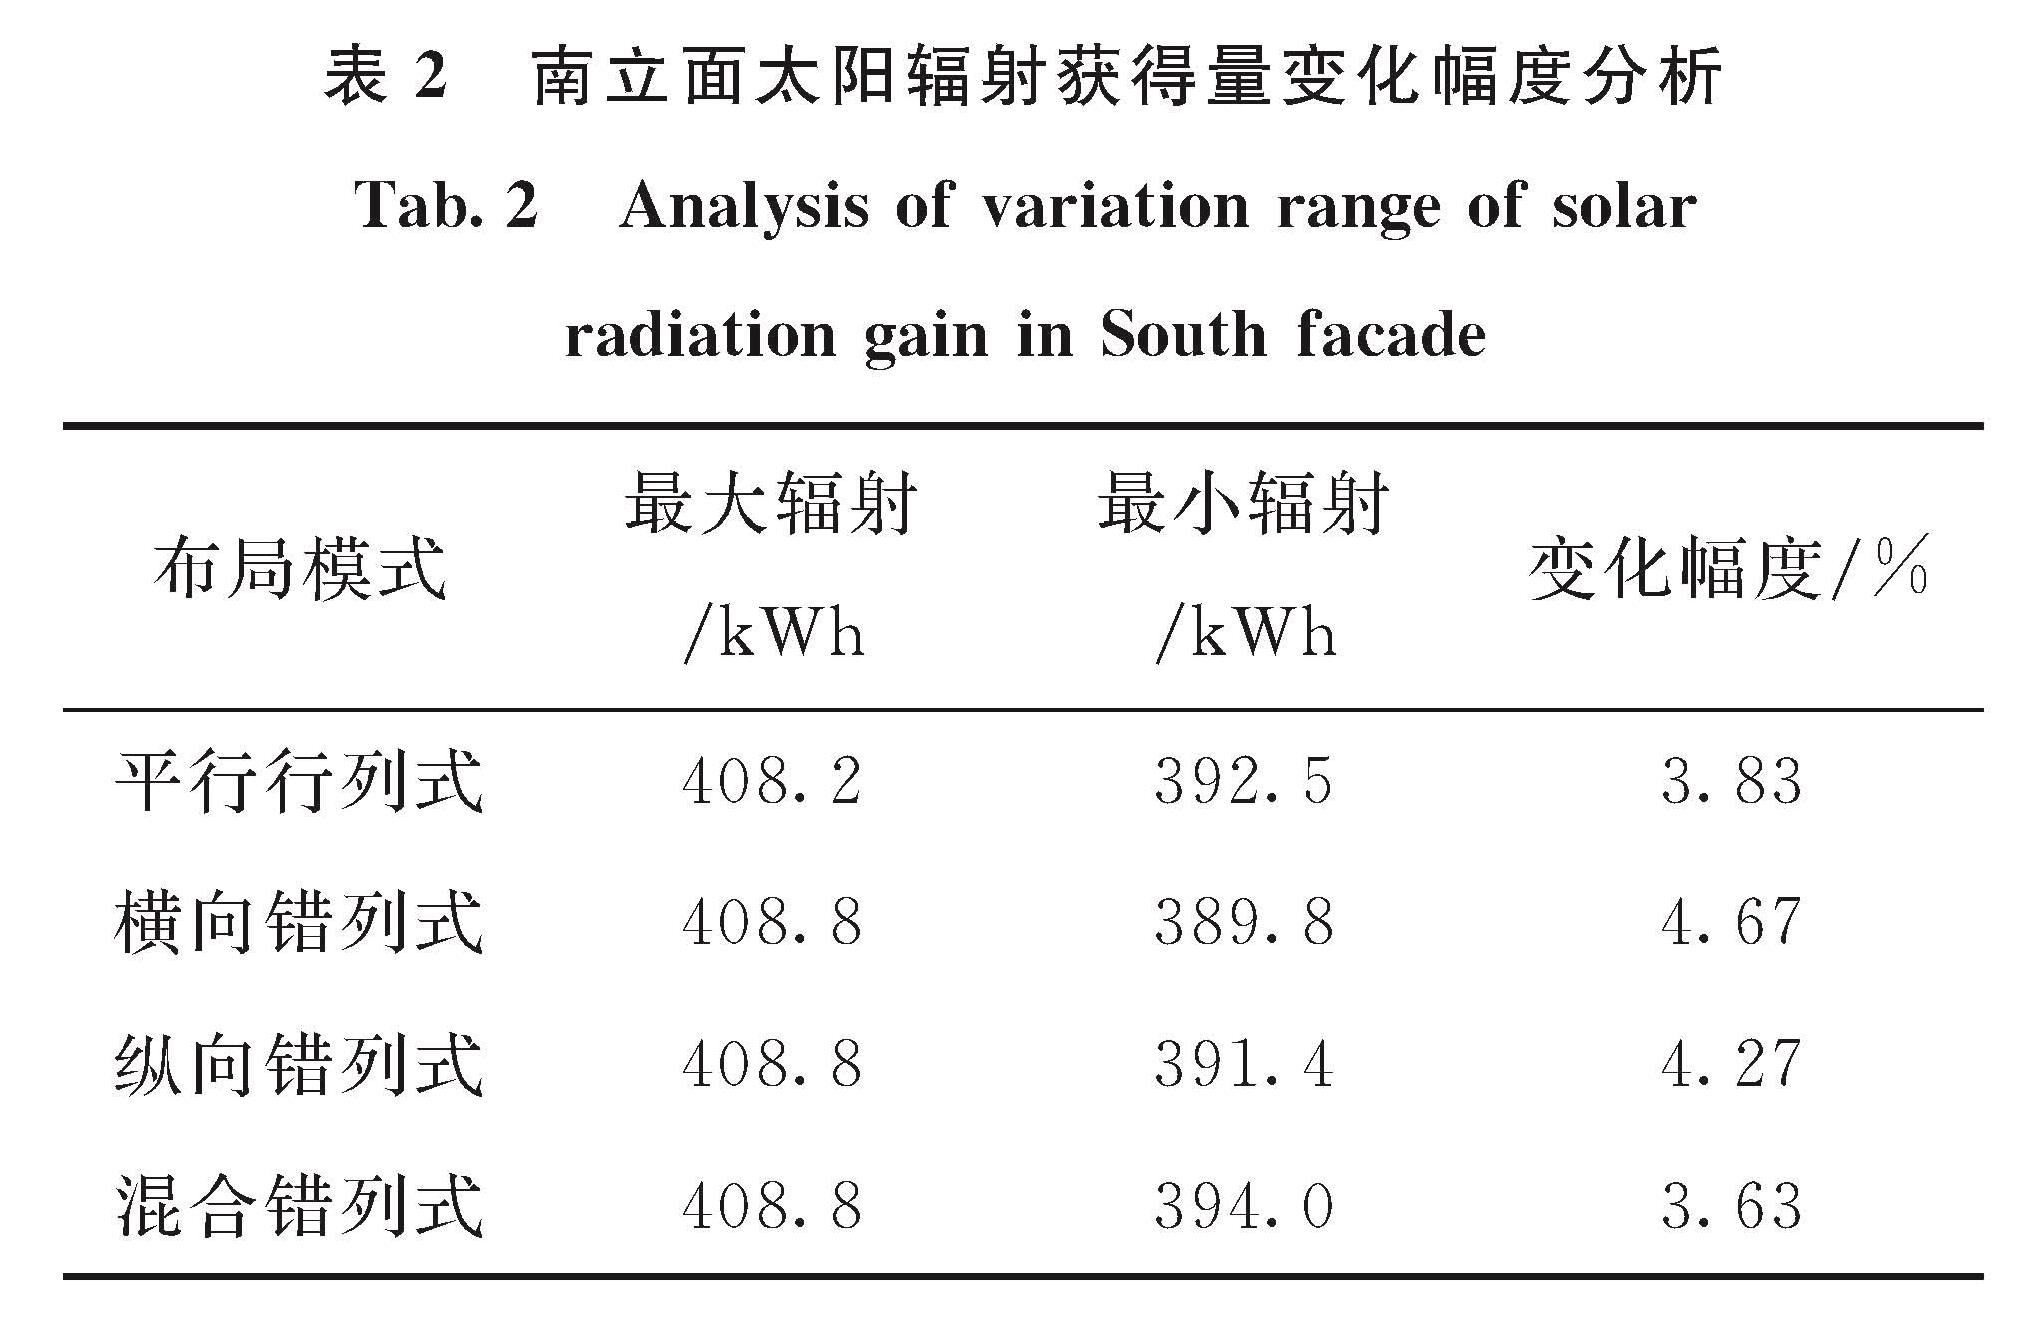 表2 南立面太阳辐射获得量变化幅度分析<br/>Tab.2 Analysis of variation range of solar radiation gain in South facade